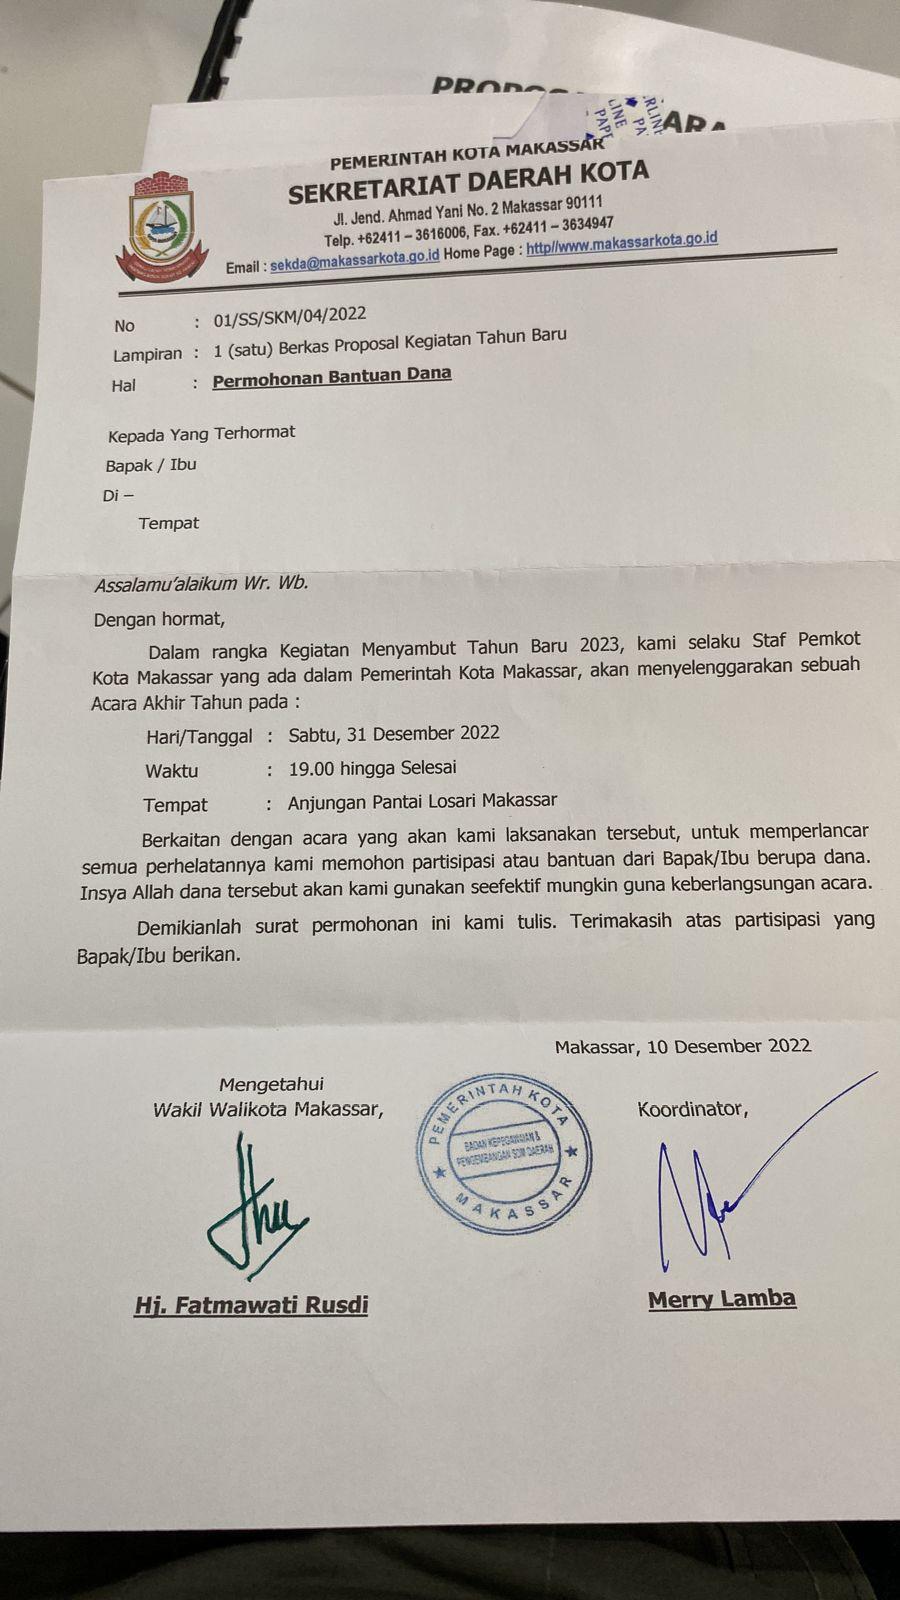 Waspada! Beredar Proposal Palsu Bantuan Atas Nama Wawali Makassar Fatmawati Rusdi